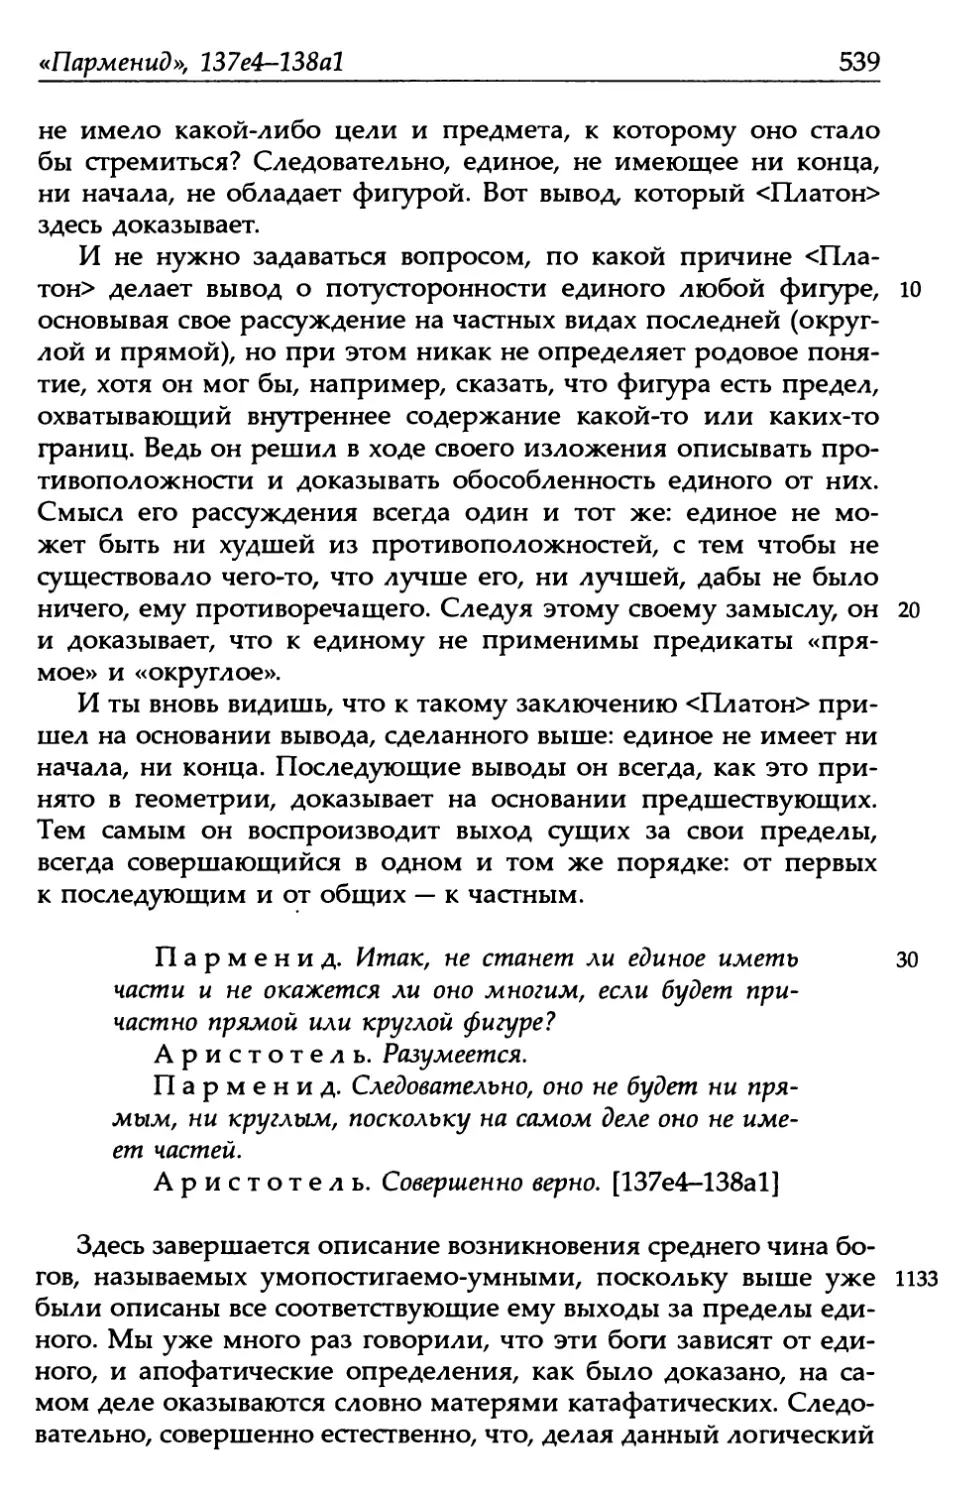 «Парменид», 137е4-138а1